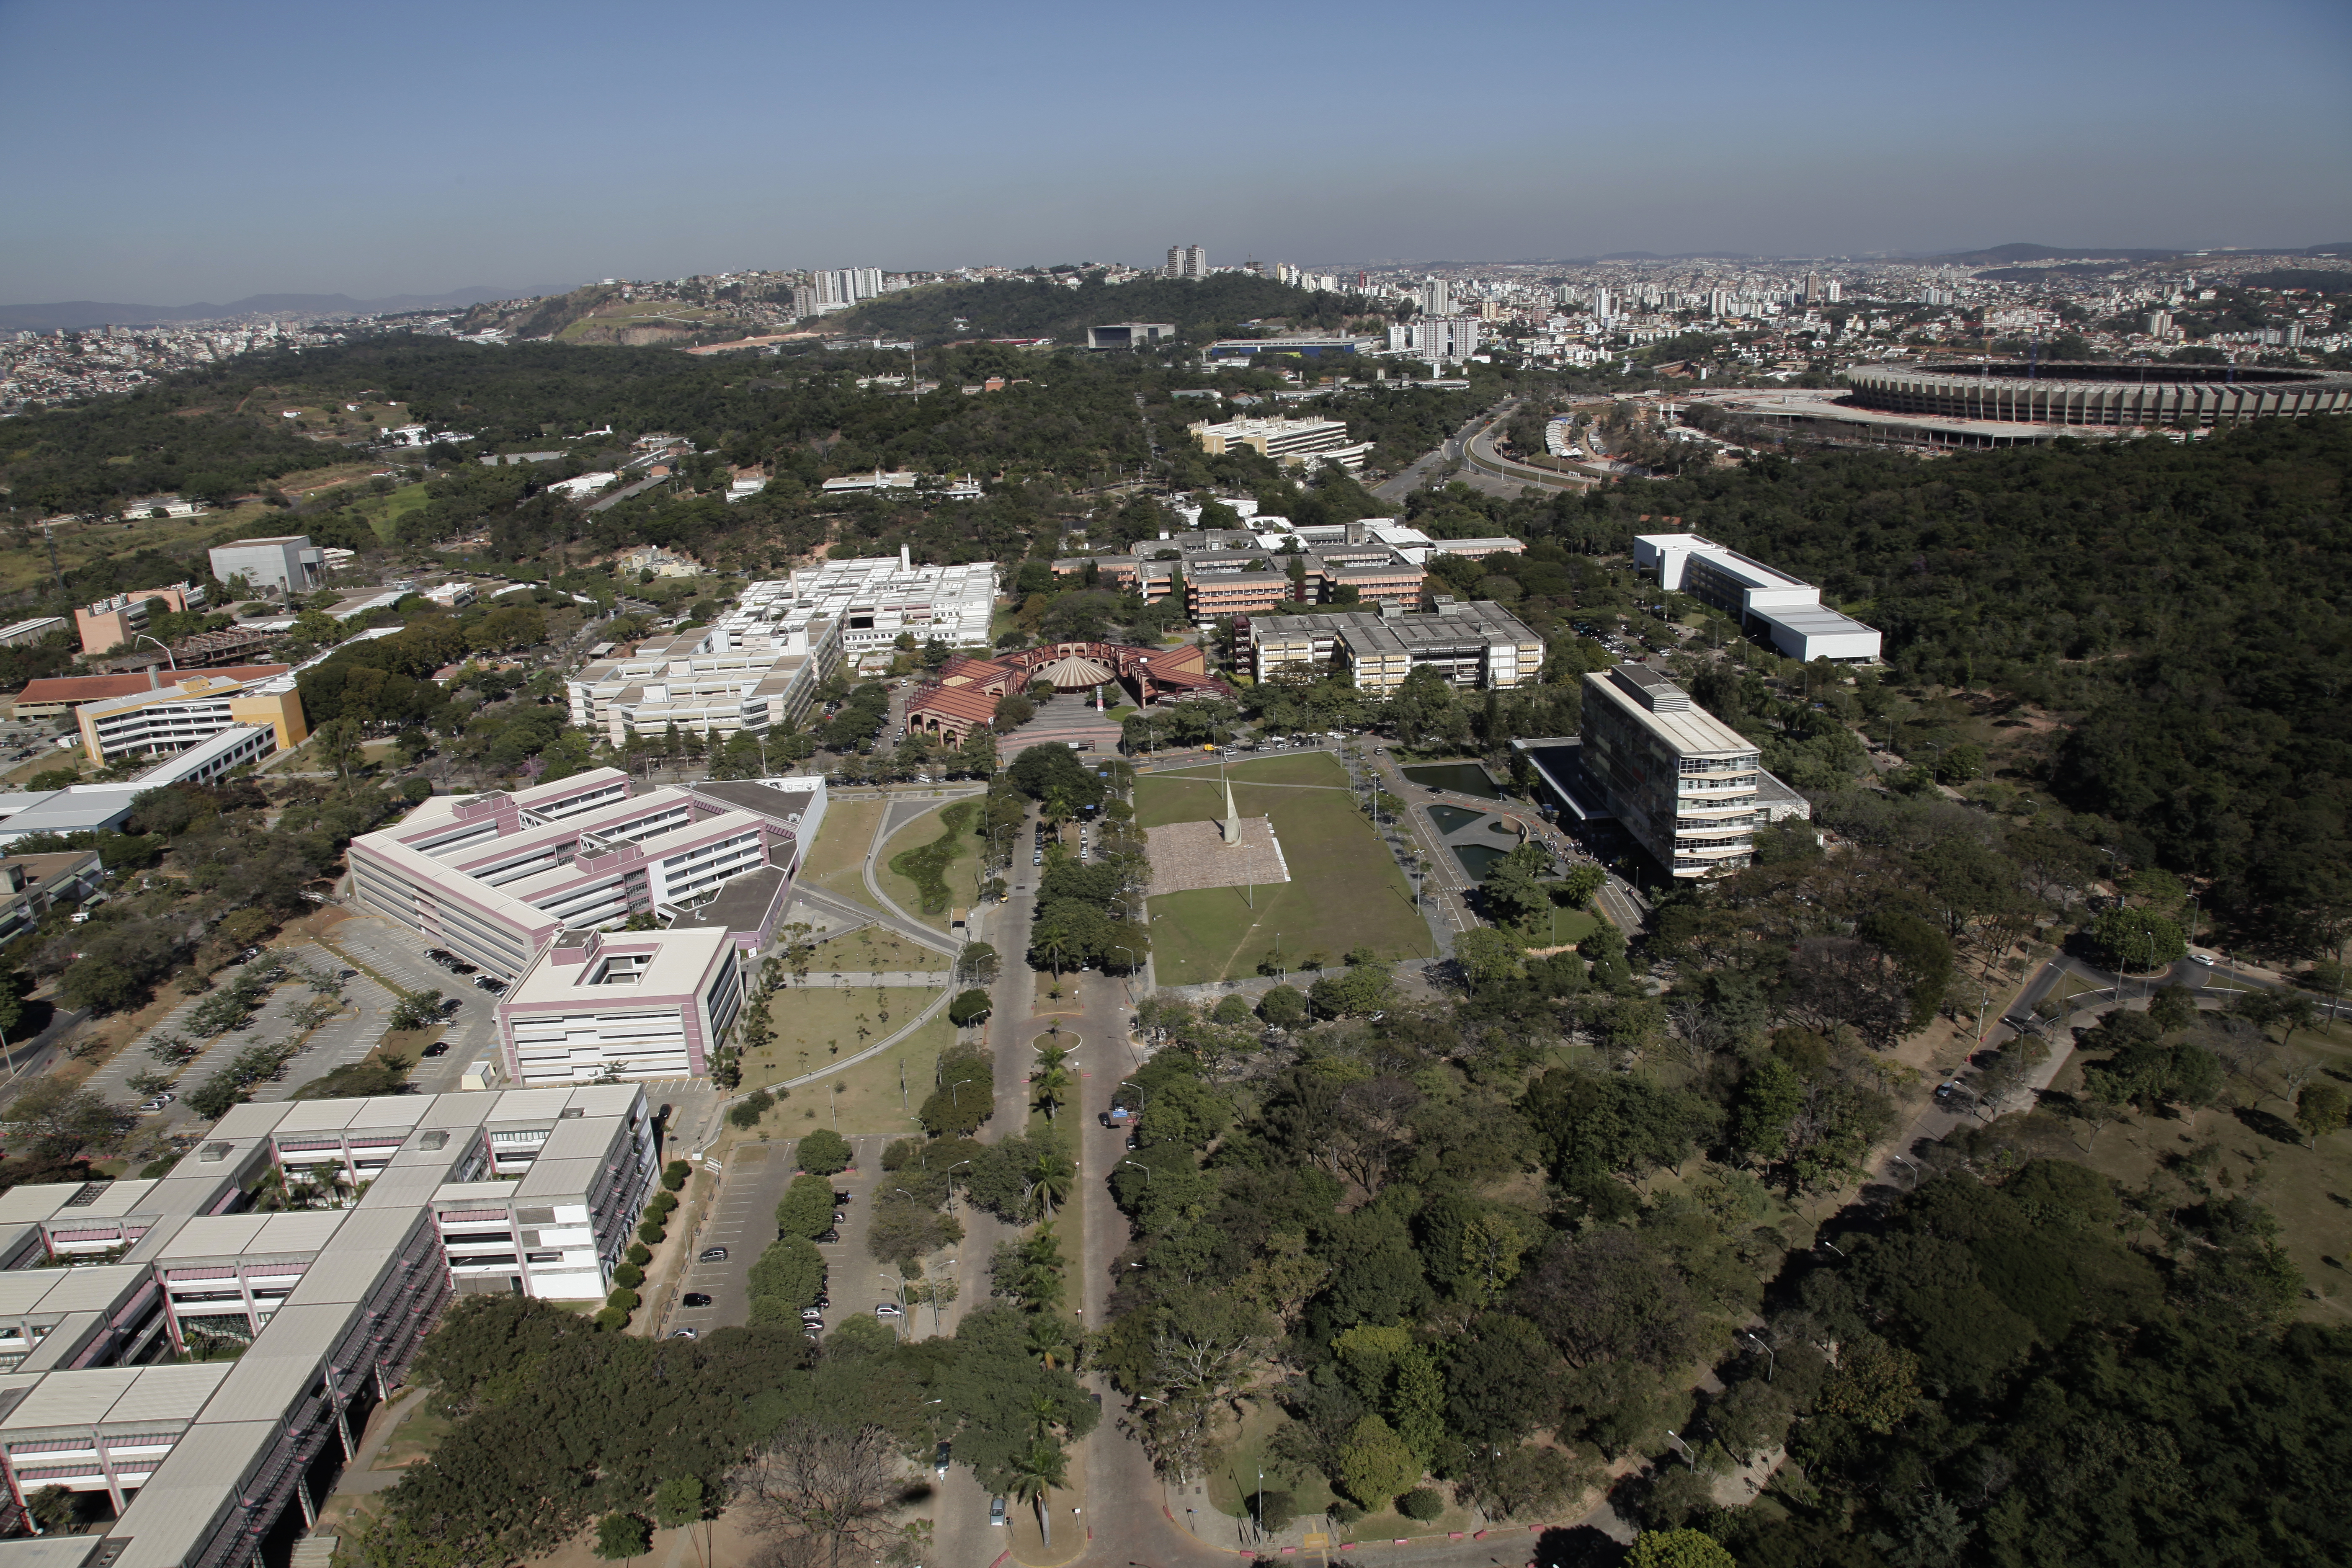 Relatório destaca qualidade da infraestrutura física da Universidade. Foto: Foca Lisboa / UFMG